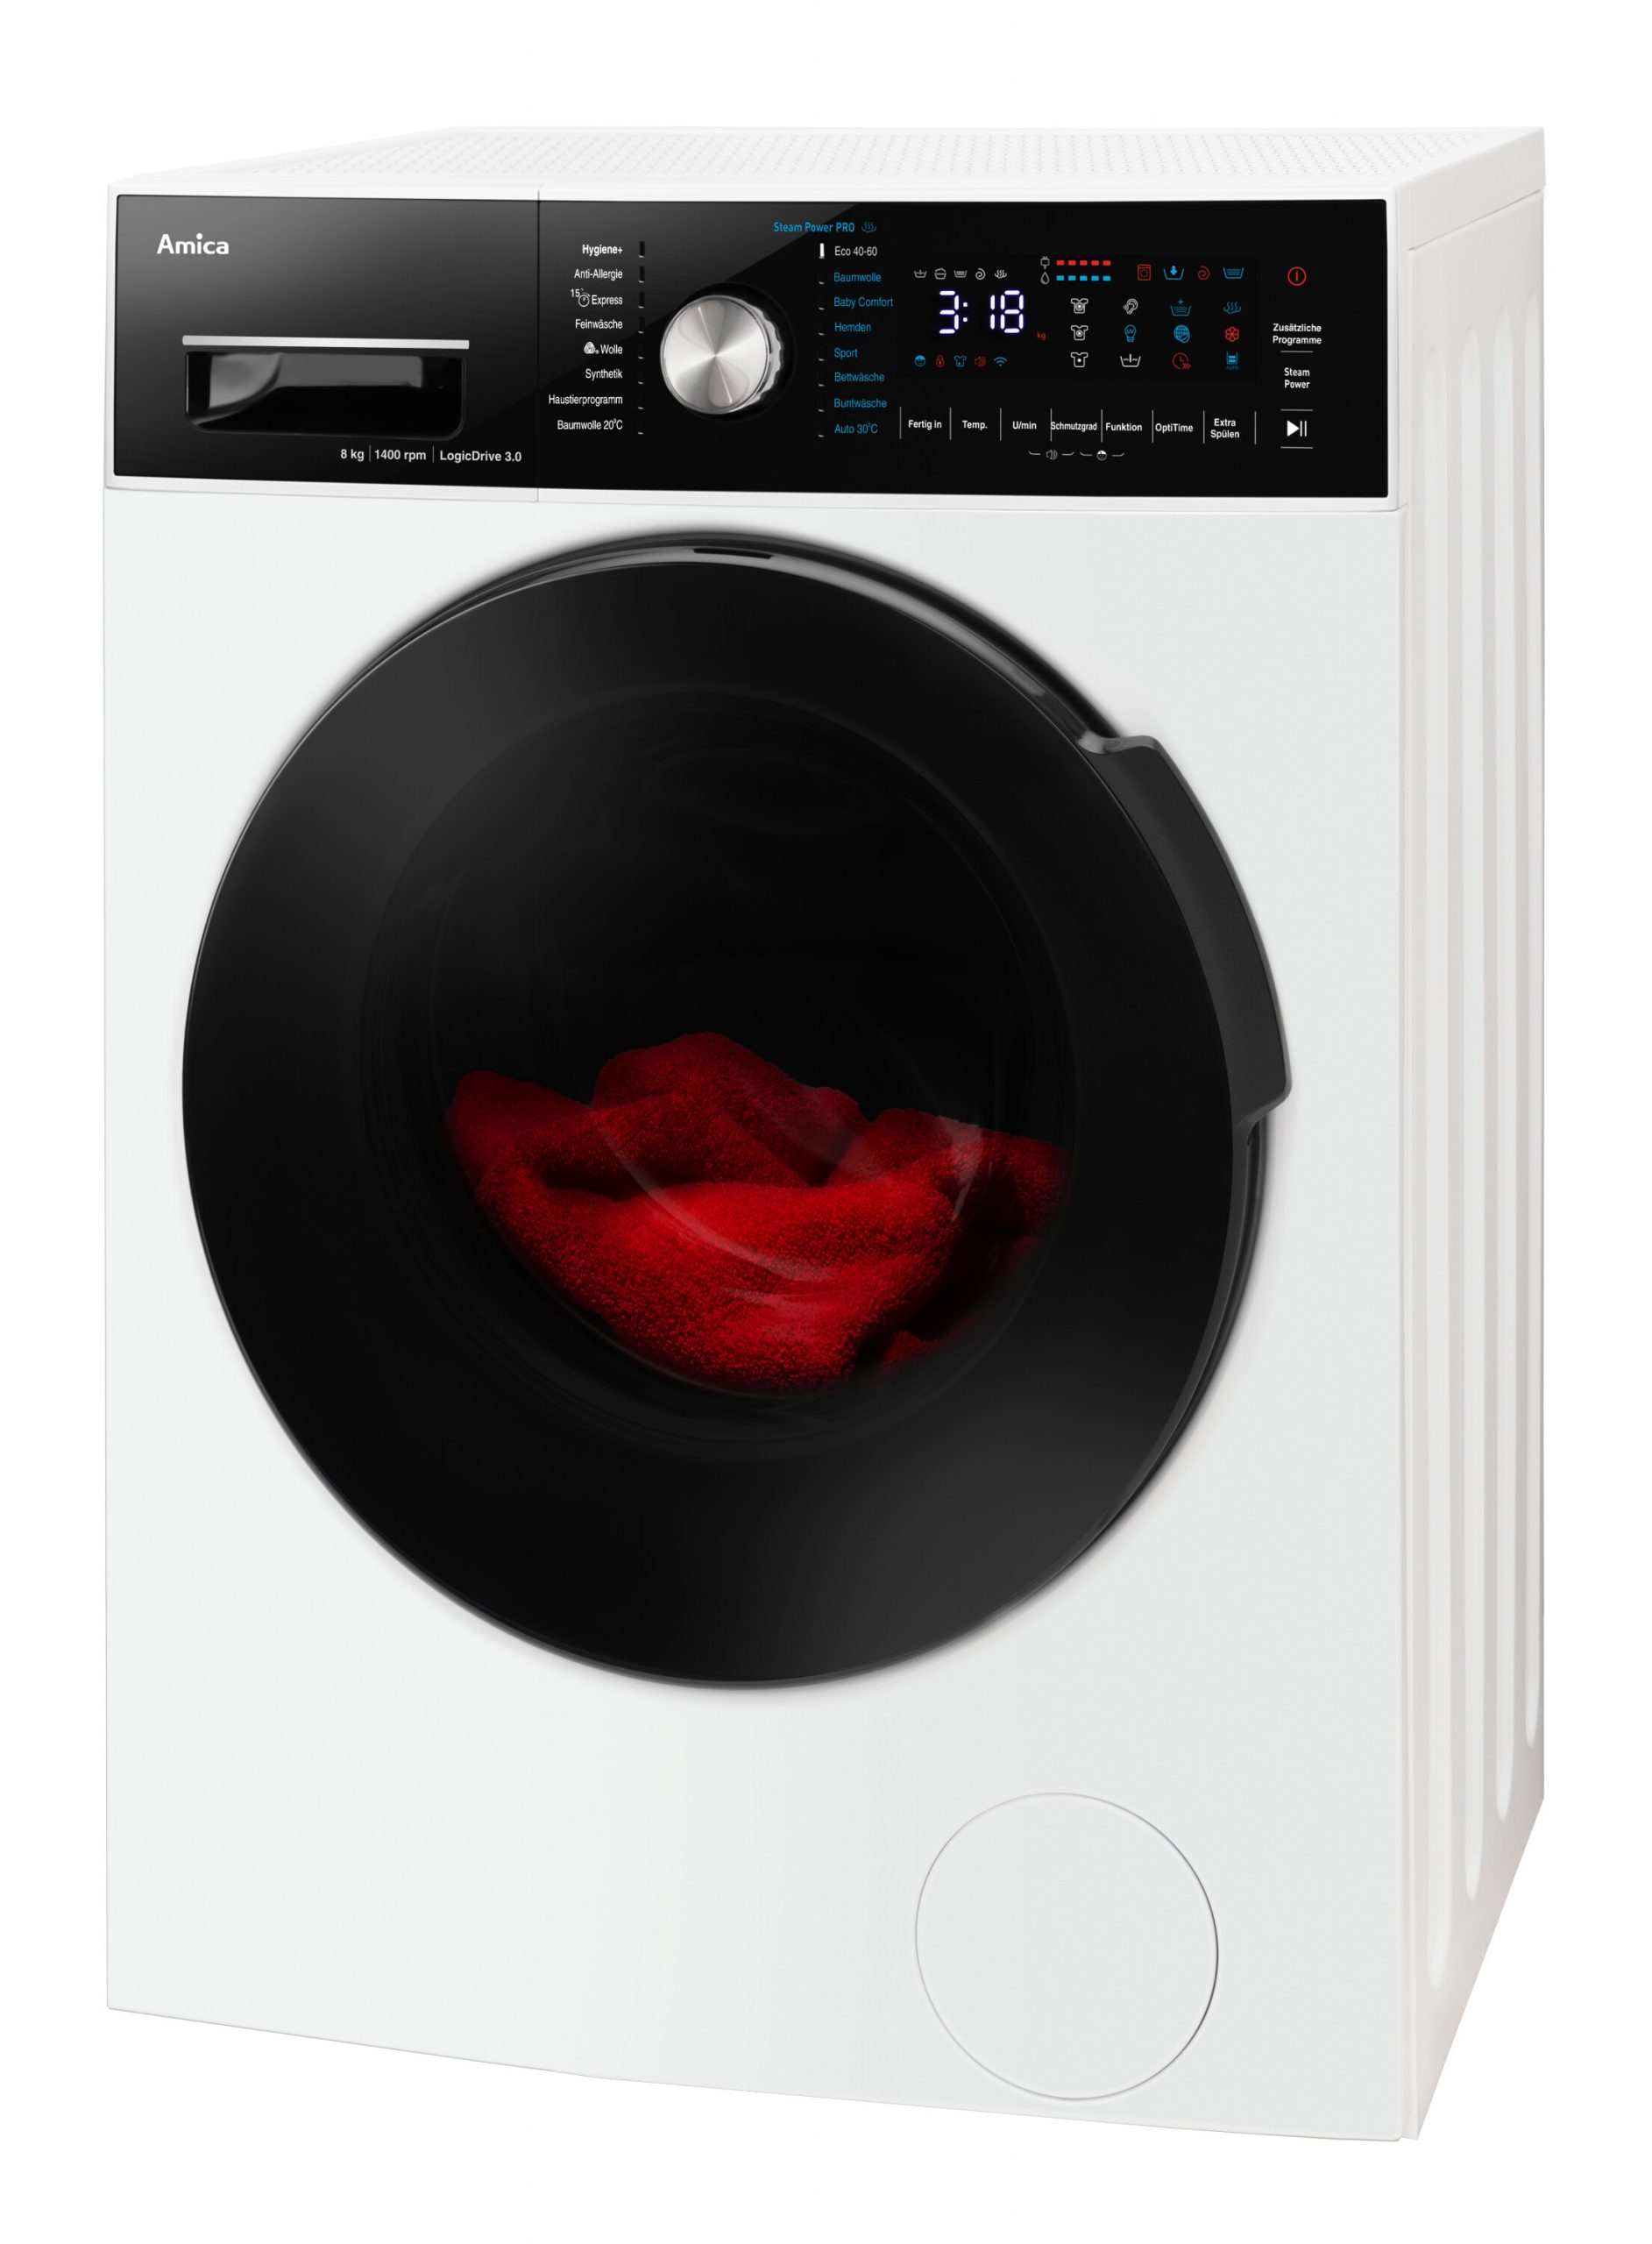 Die Amica Waschmaschine WA 484 090 vereint Hygiene und Komfort mit niedrigem Energie- und Wasserverbrauch. 20 Waschprogramme ermöglichen effektives Waschen.